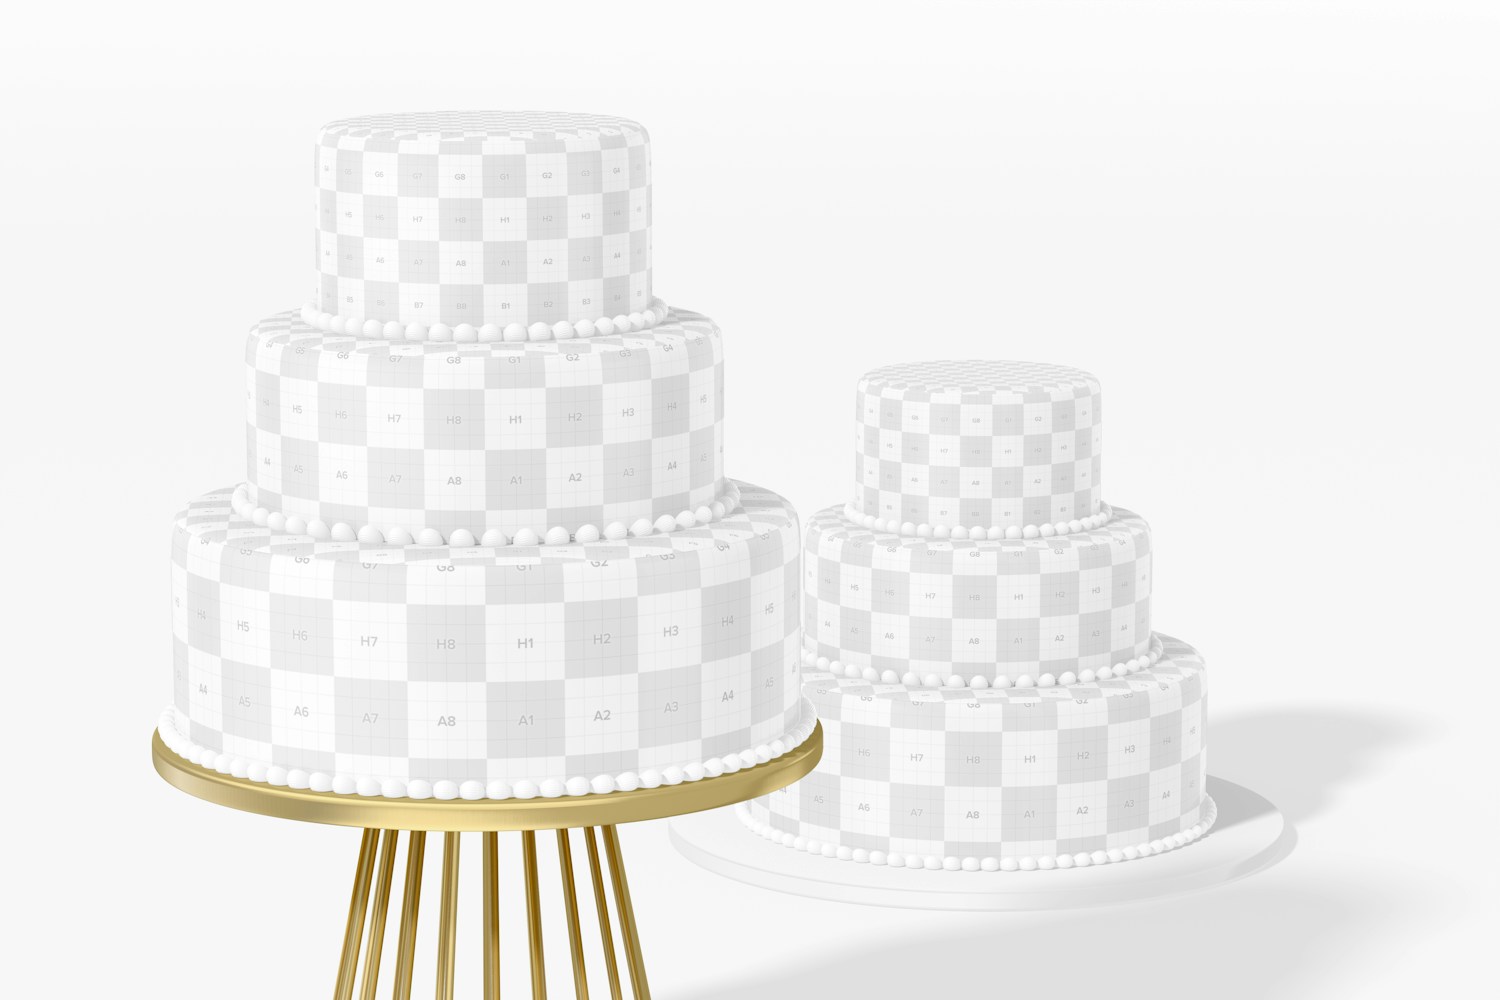 Wedding Cake Mockup, Perspective